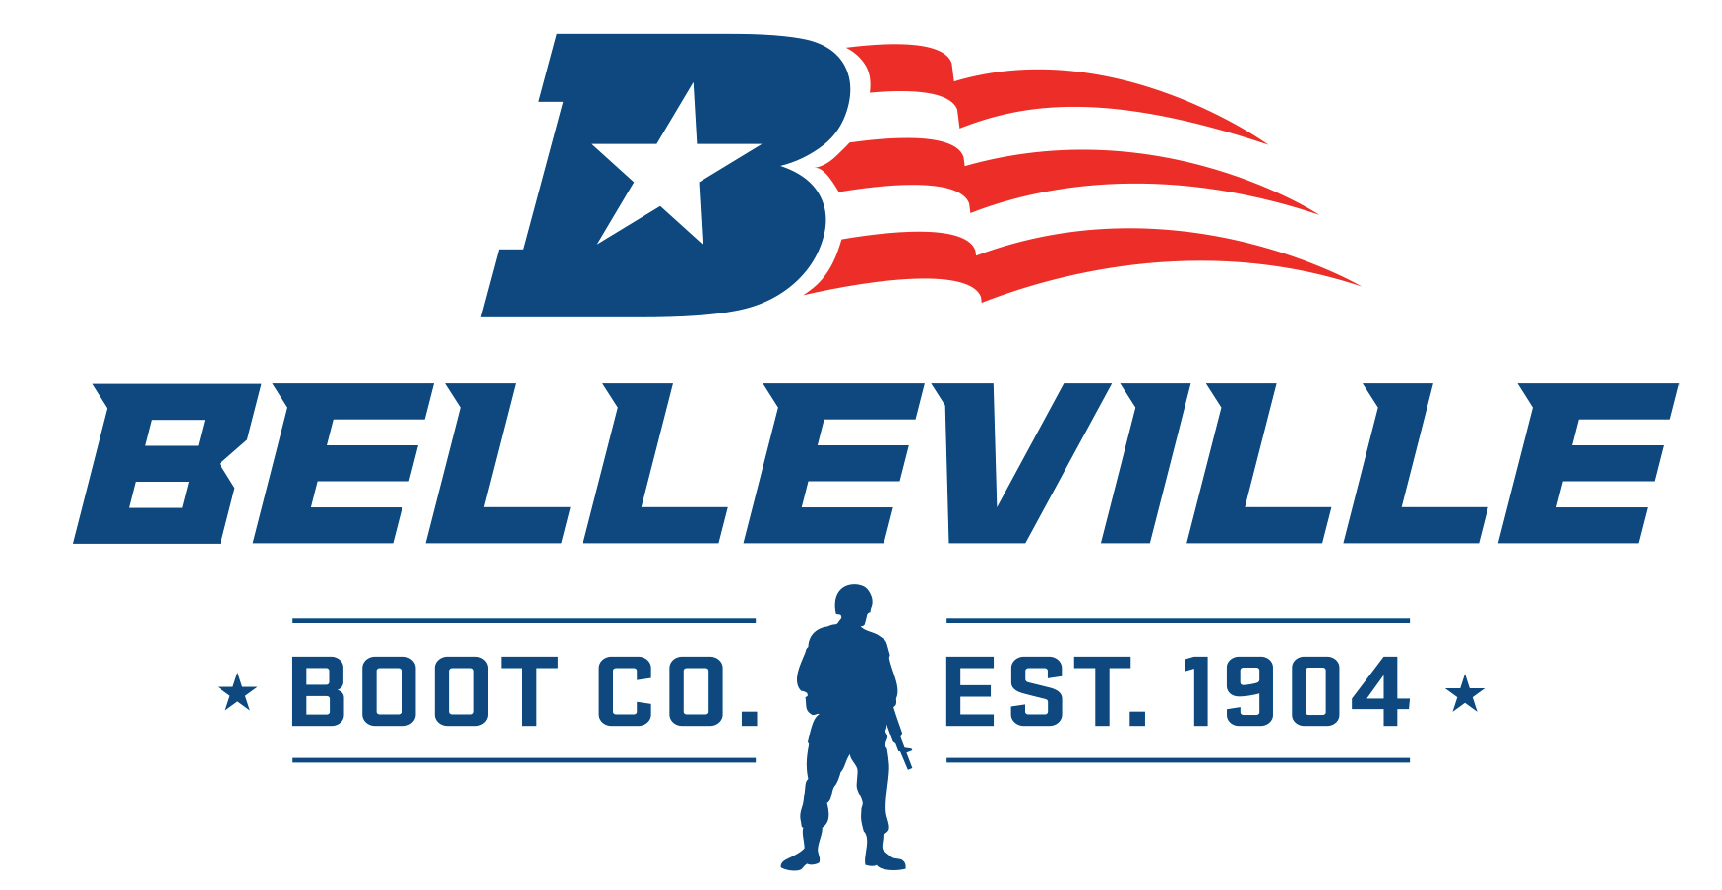 Belleville Shoes - Bronze Sponsor